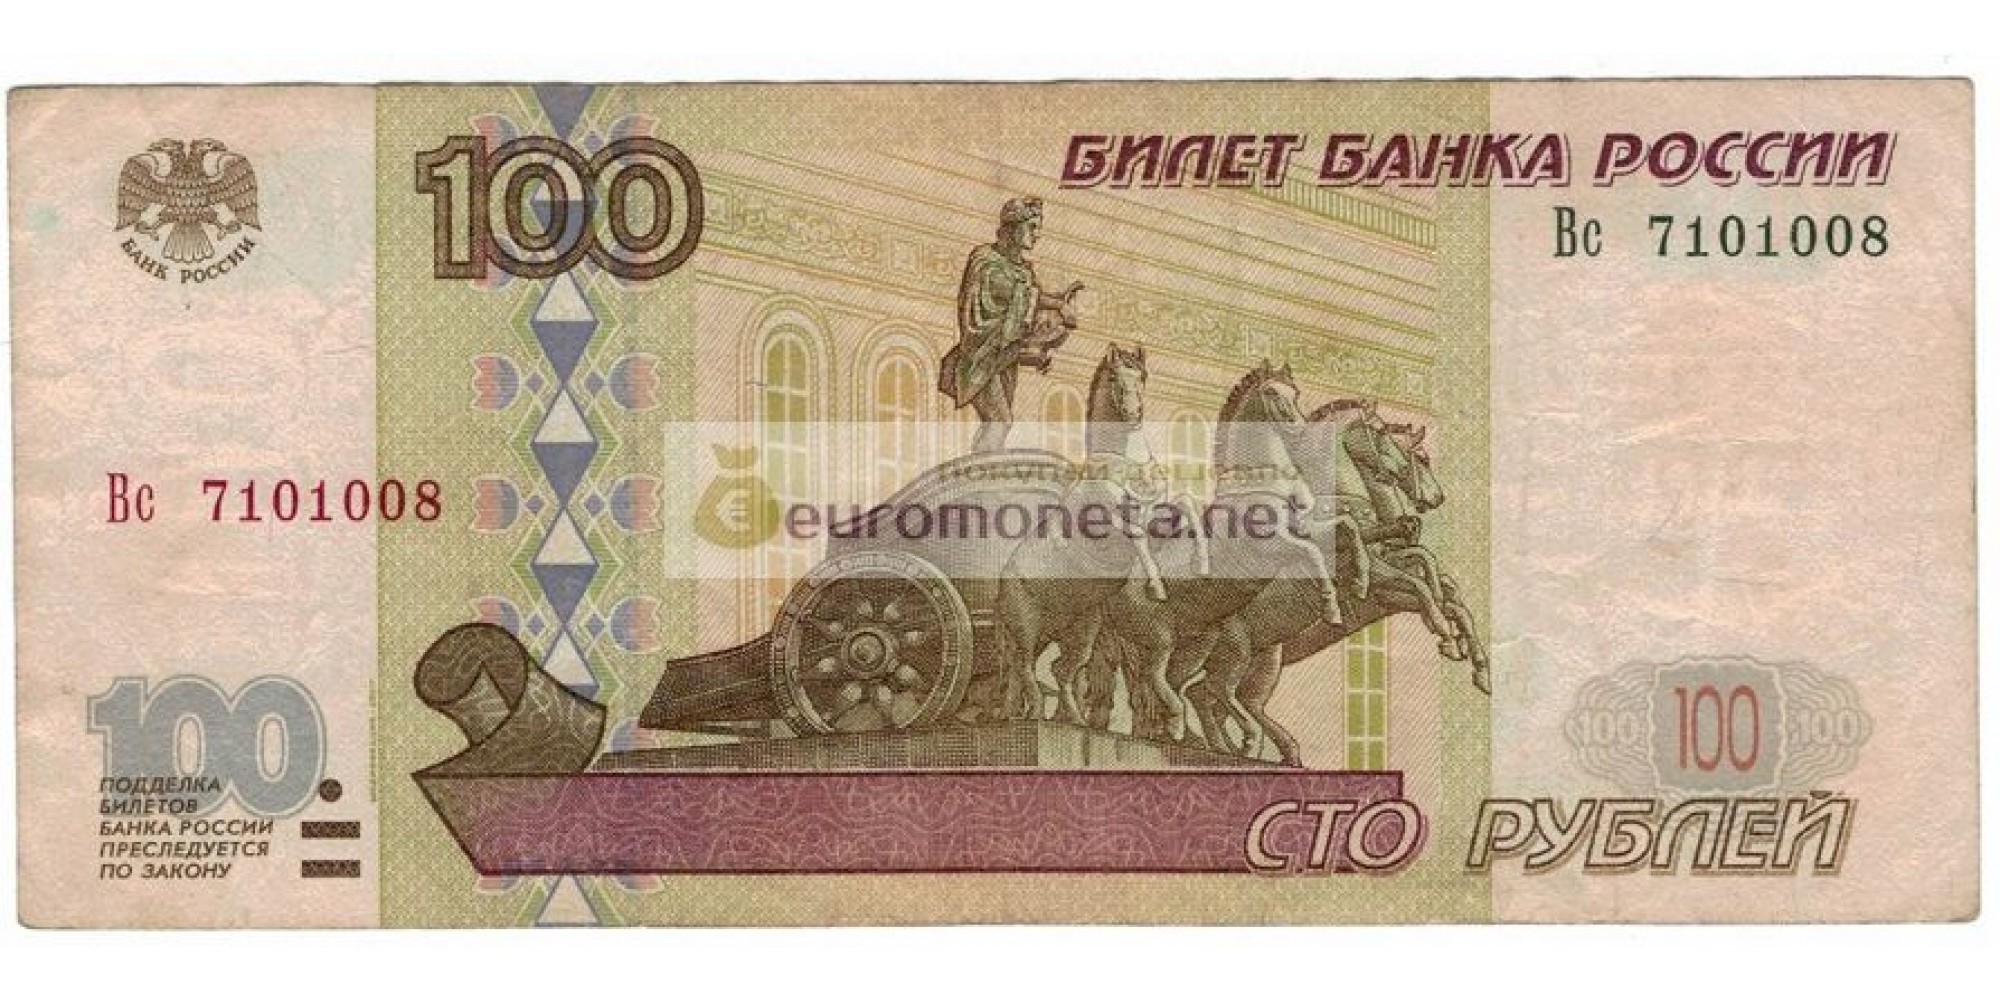 Россия 100 рублей 1997 год модификация 2001 год серия Вс 7101008